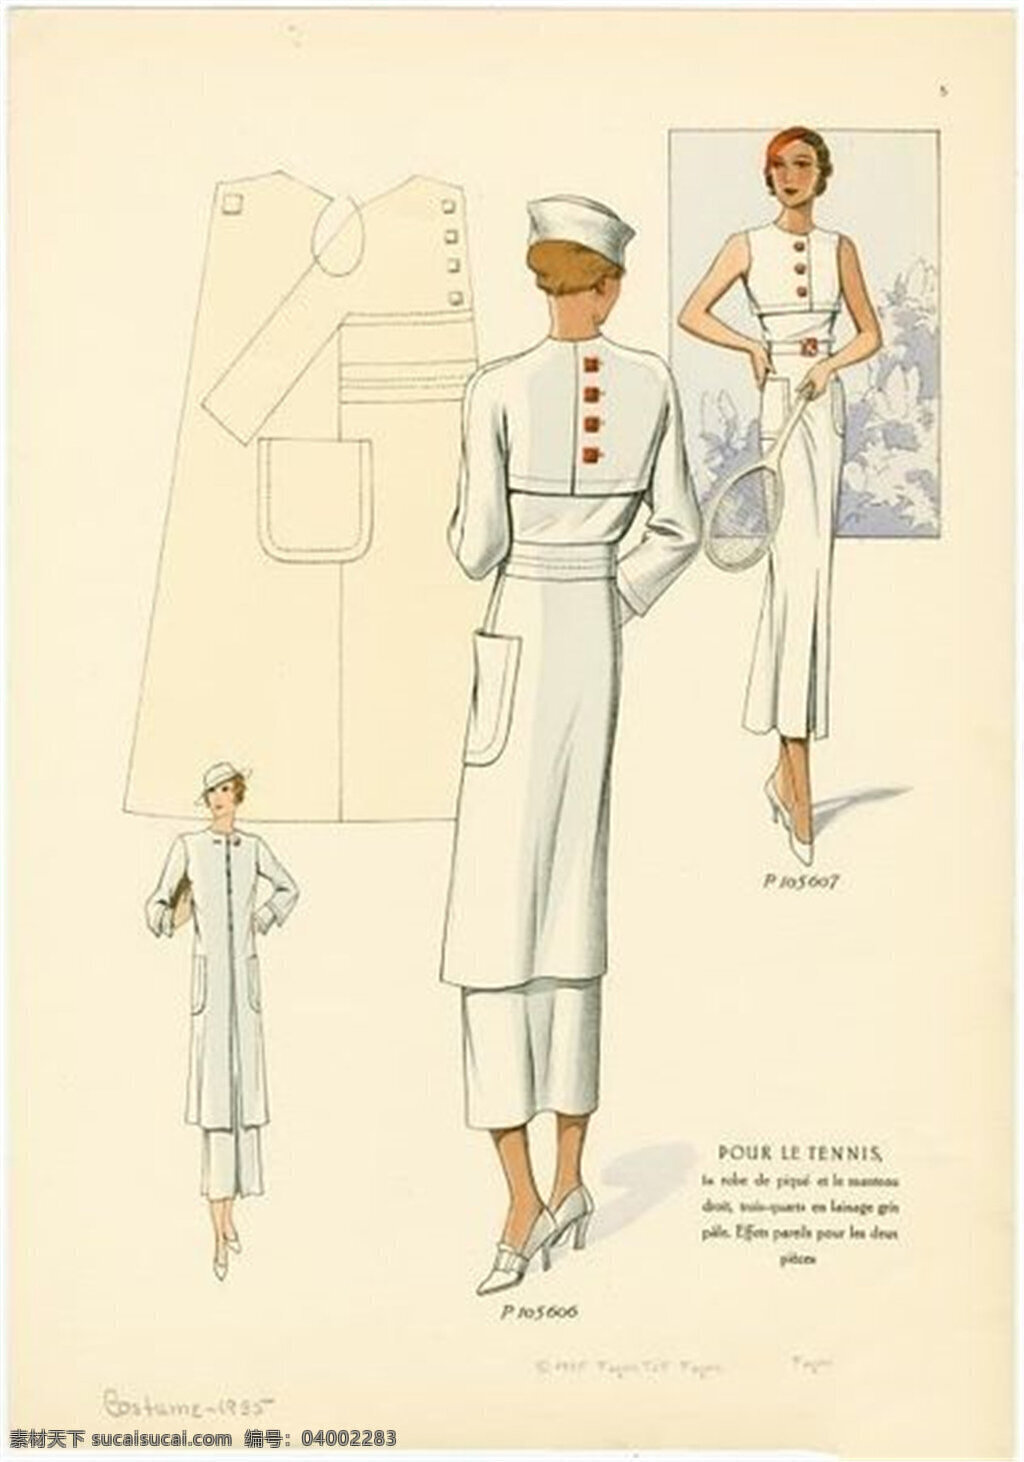 欧式 白色 长裙 设计图 服装设计 时尚女装 职业女装 女装设计 效果图 服装 服装效果图 连衣裙 欧洲女装 时装